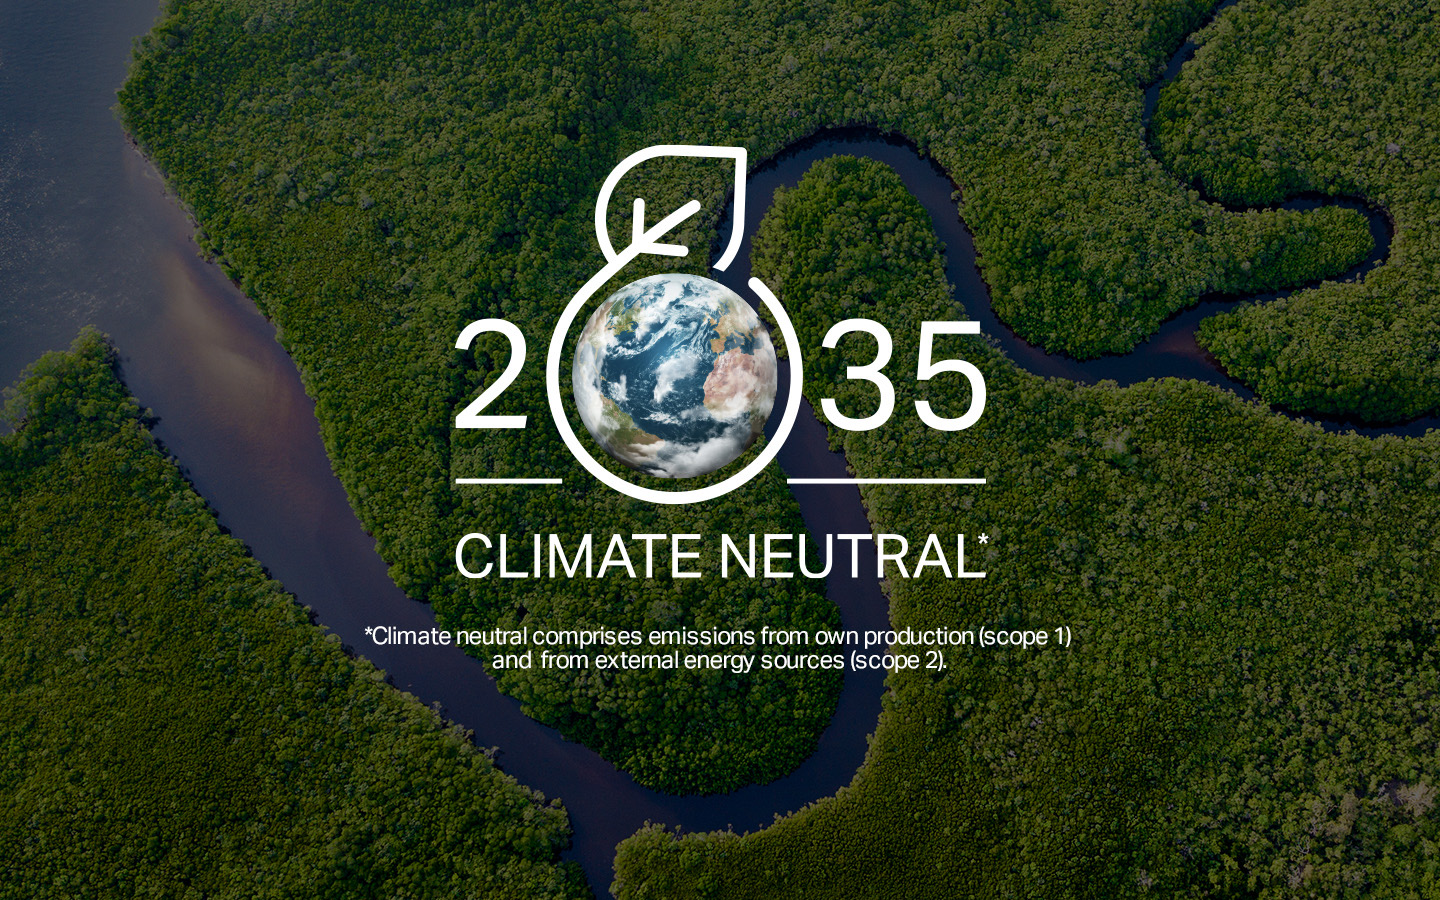 โคเวสโตรตั้งเป้าสู่ความเป็นกลางทางสภาพภูมิอากาศ ลดปริมาณการปล่อยก๊าซเรือนกระจกให้เป็นศูนย์ (Net zero1) ภายในปี ค.ศ. 2035